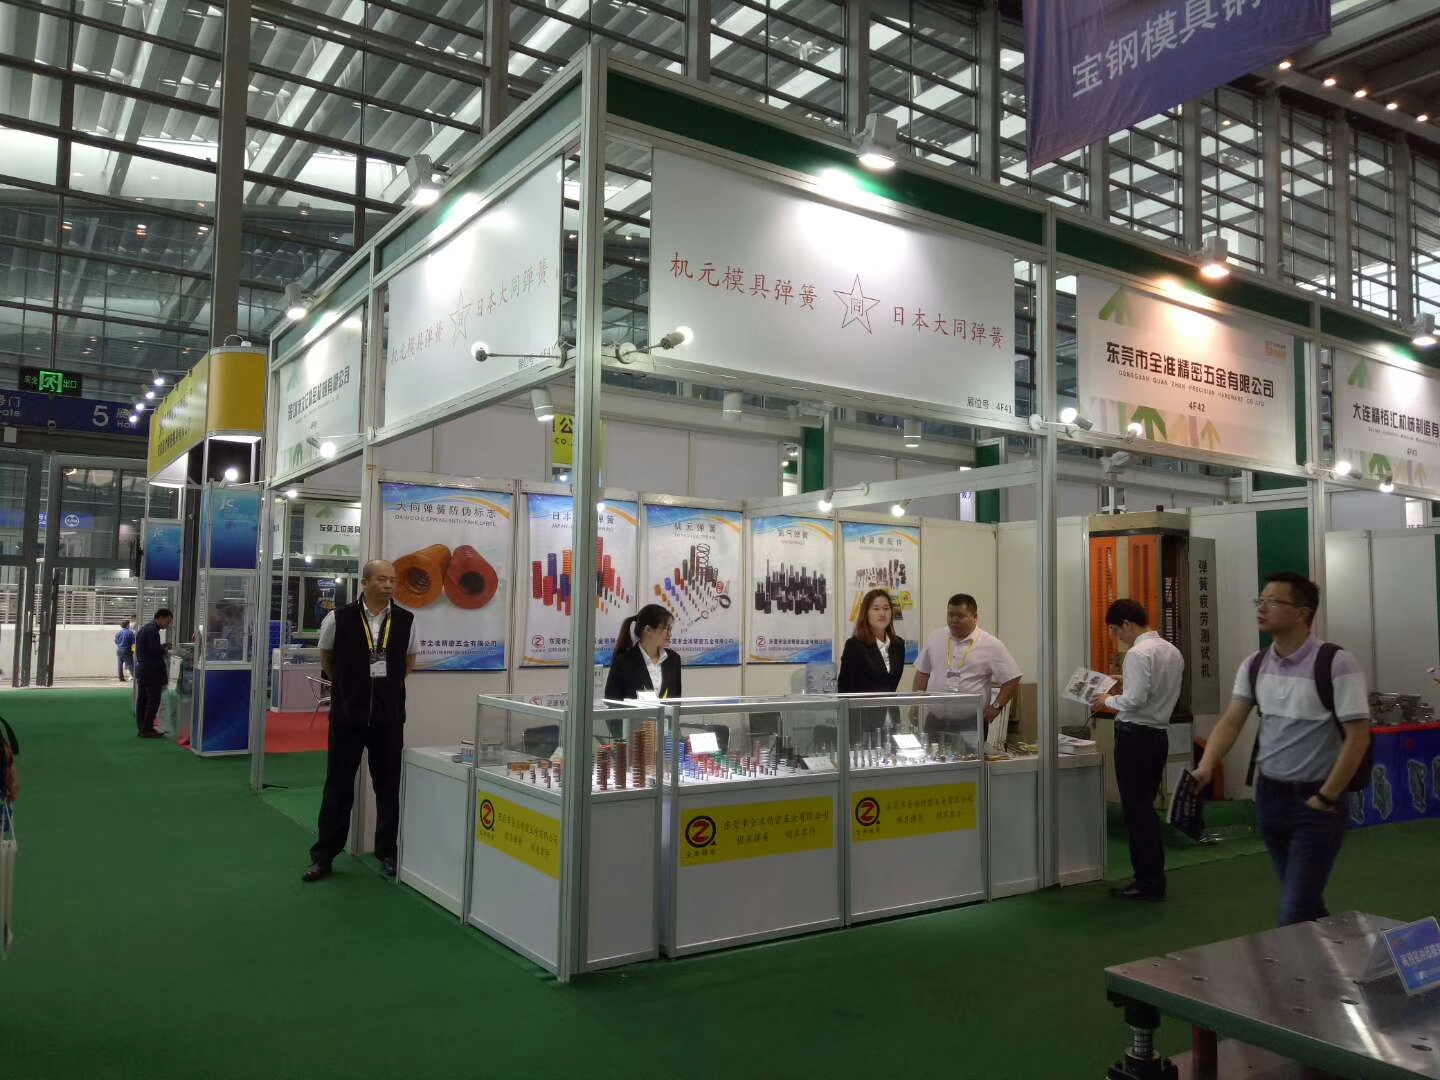 Shenzhen Exhibition in March 2018